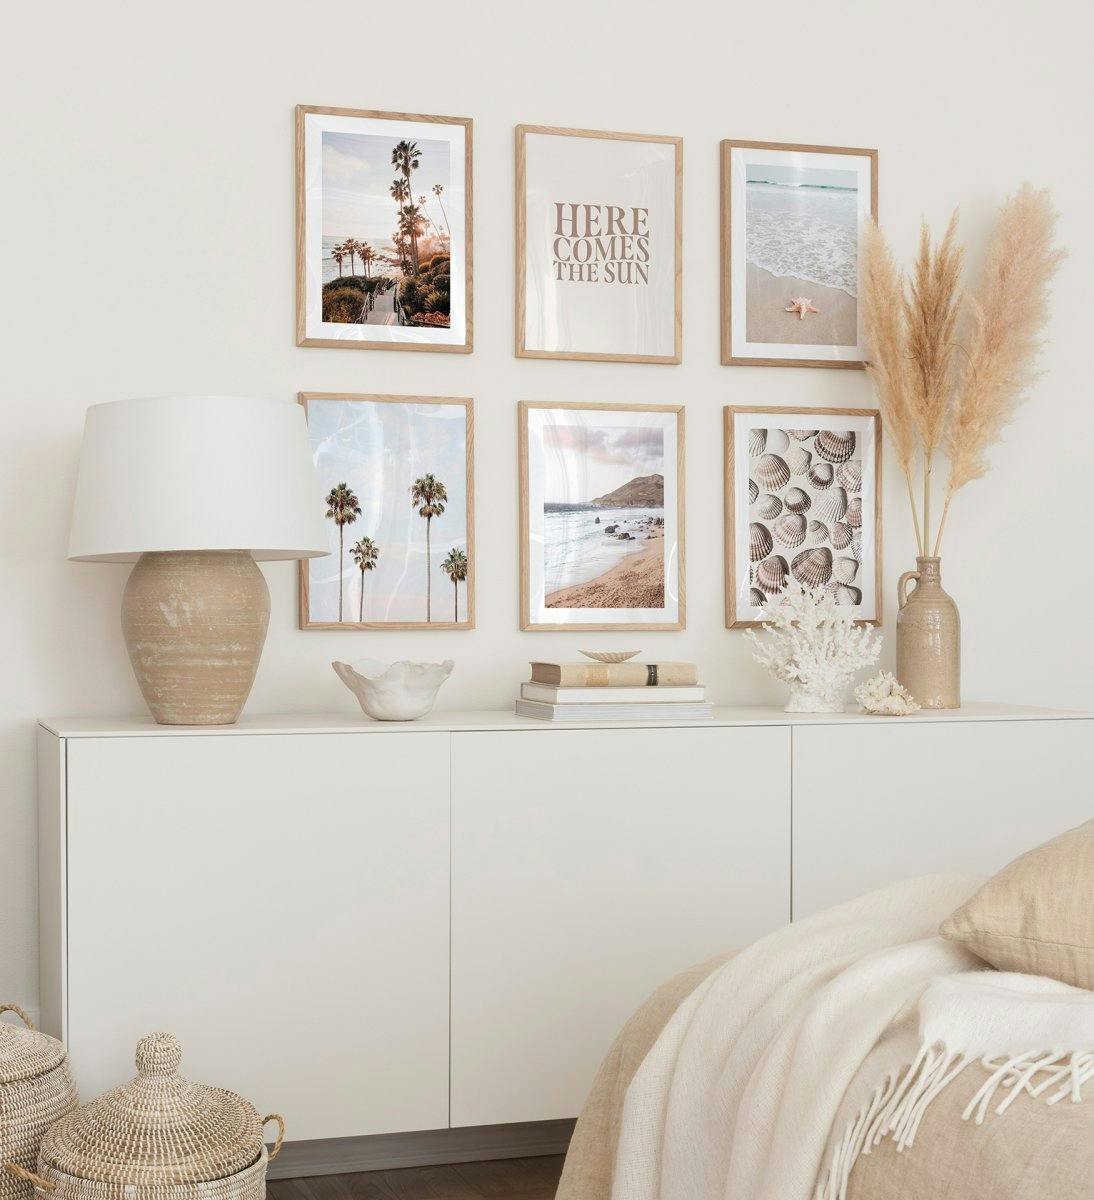 Fotowand voor slaapkamer met tropische strandposters in eikenhouten lijsten. 